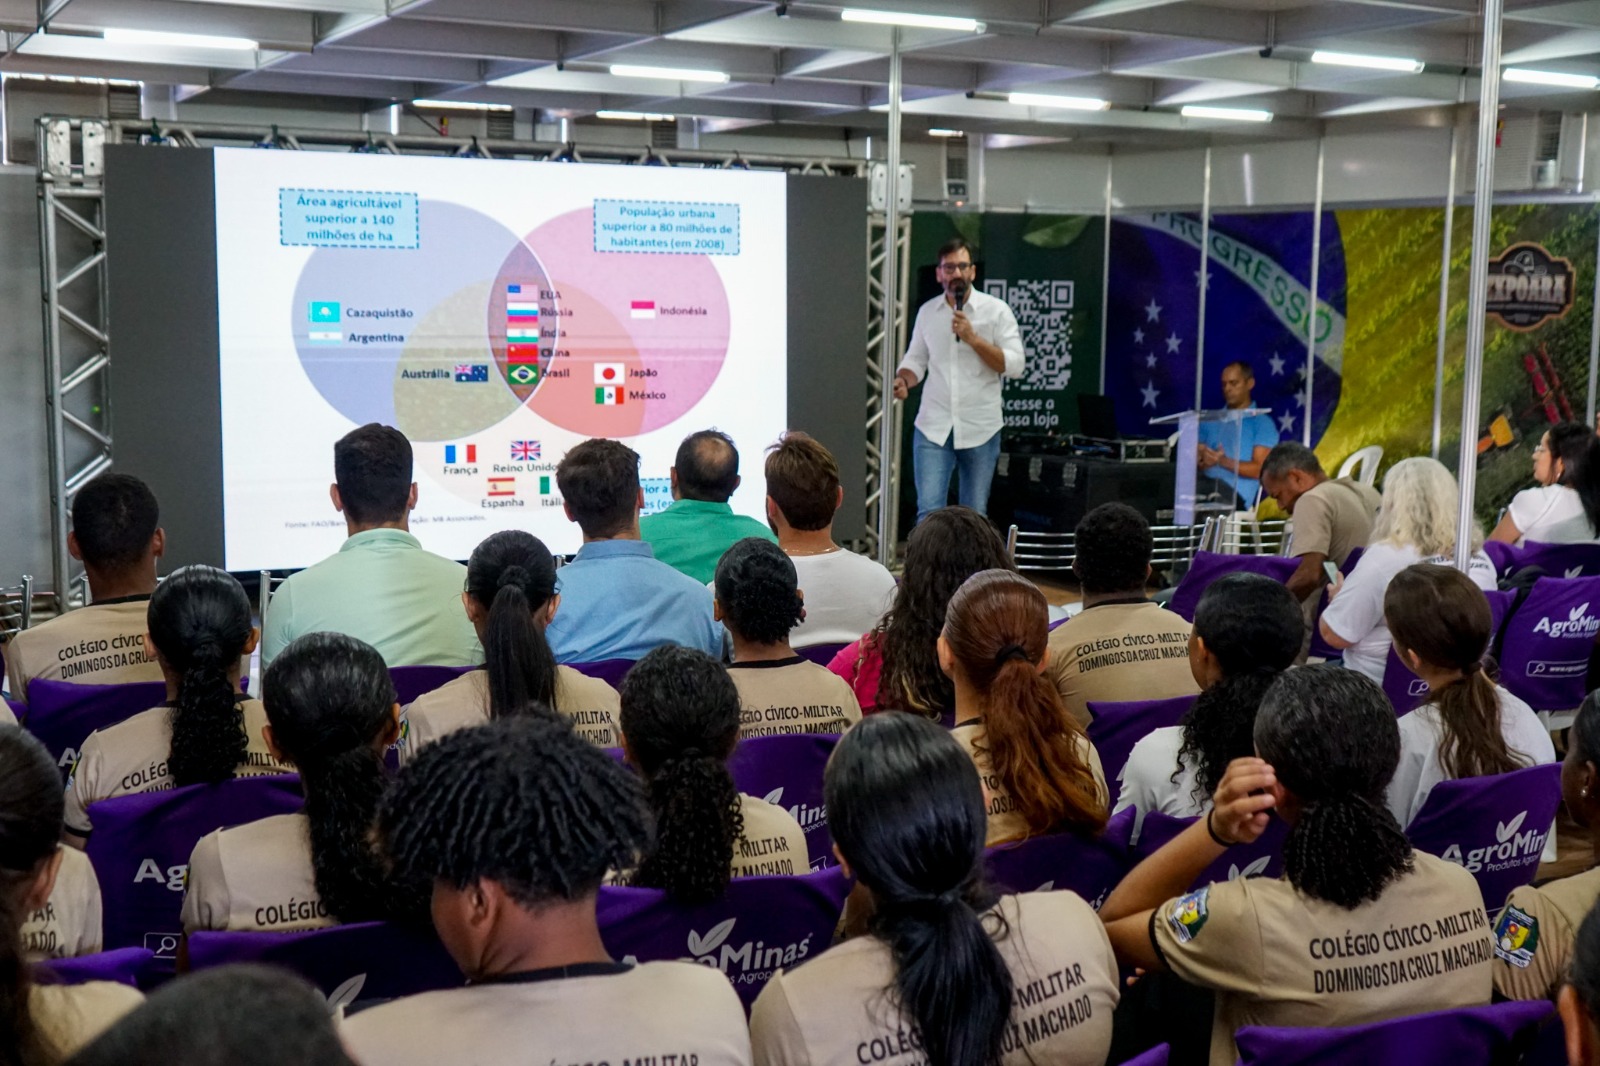 O fórum foi realizado pela Prefeitura de Araguaína em parceria com a Semana Tecnológica do Sebrae e dentro da programação da 56ª Expoara